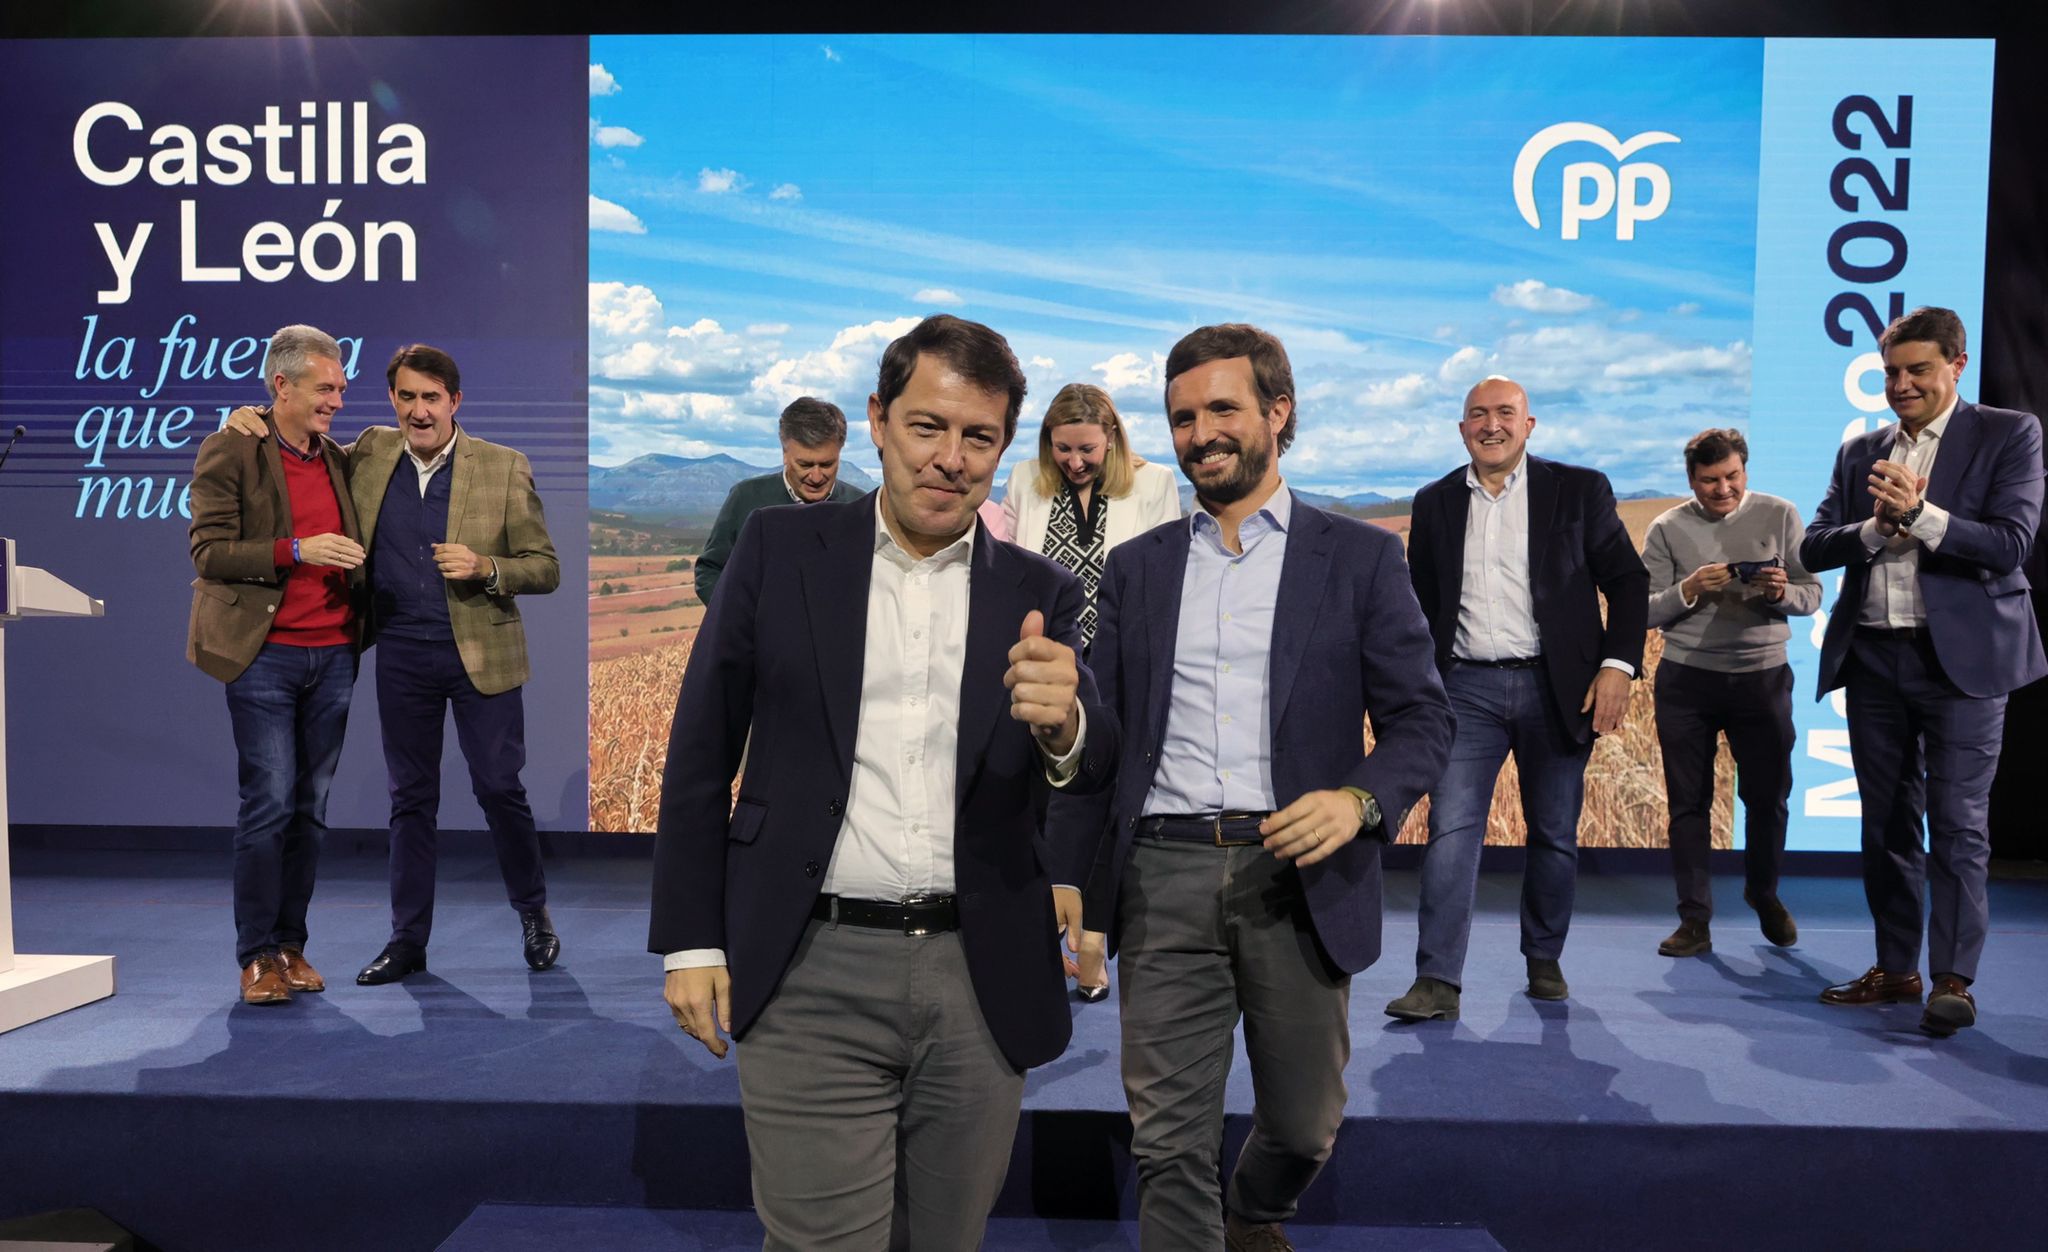 El PP se enfrenta a “cómo gestionar a Vox” mientras pone el foco en su victoria  sobre el PSOE | Líder en Información Social | Servimedia